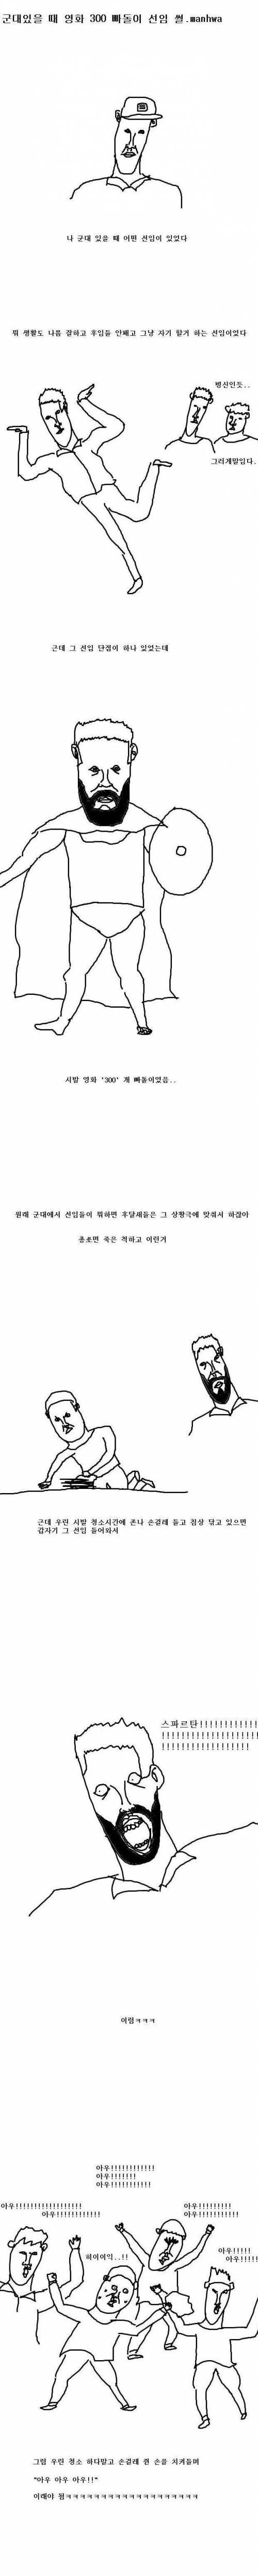 [스압] 300영화 빠돌이였던 선임 만화..jpg